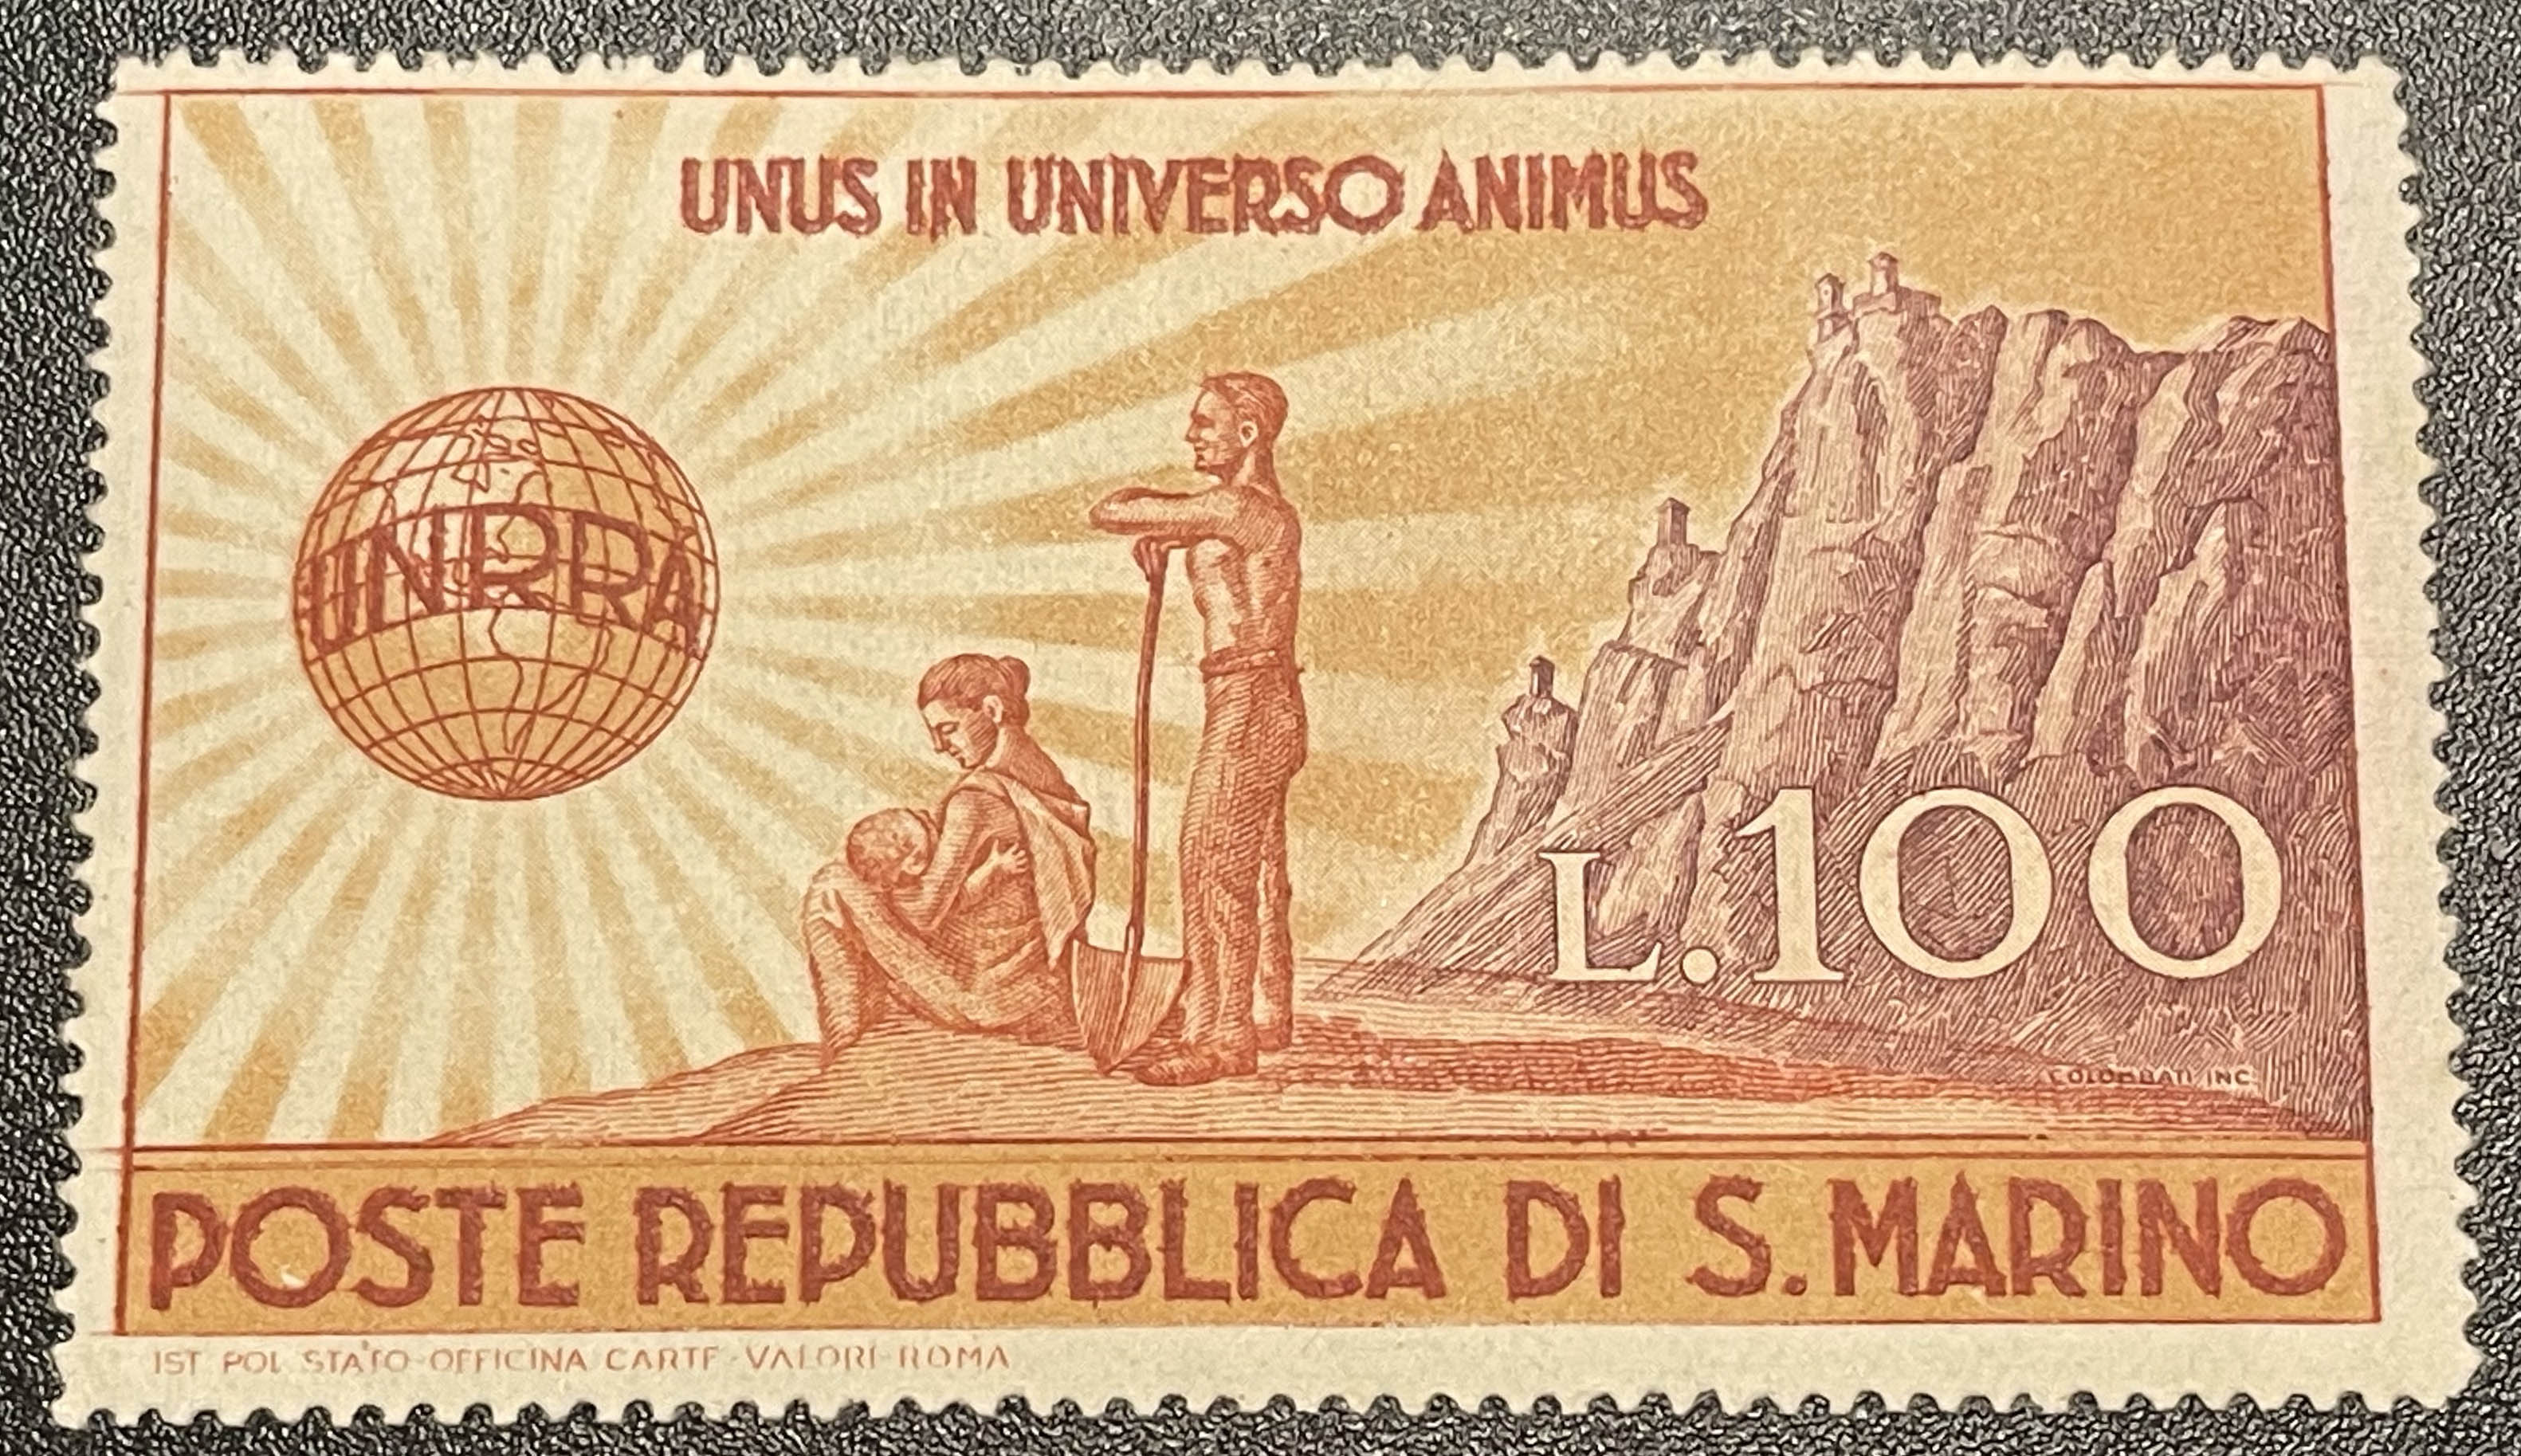 Image of San Marino stamp celebrating UNRRA